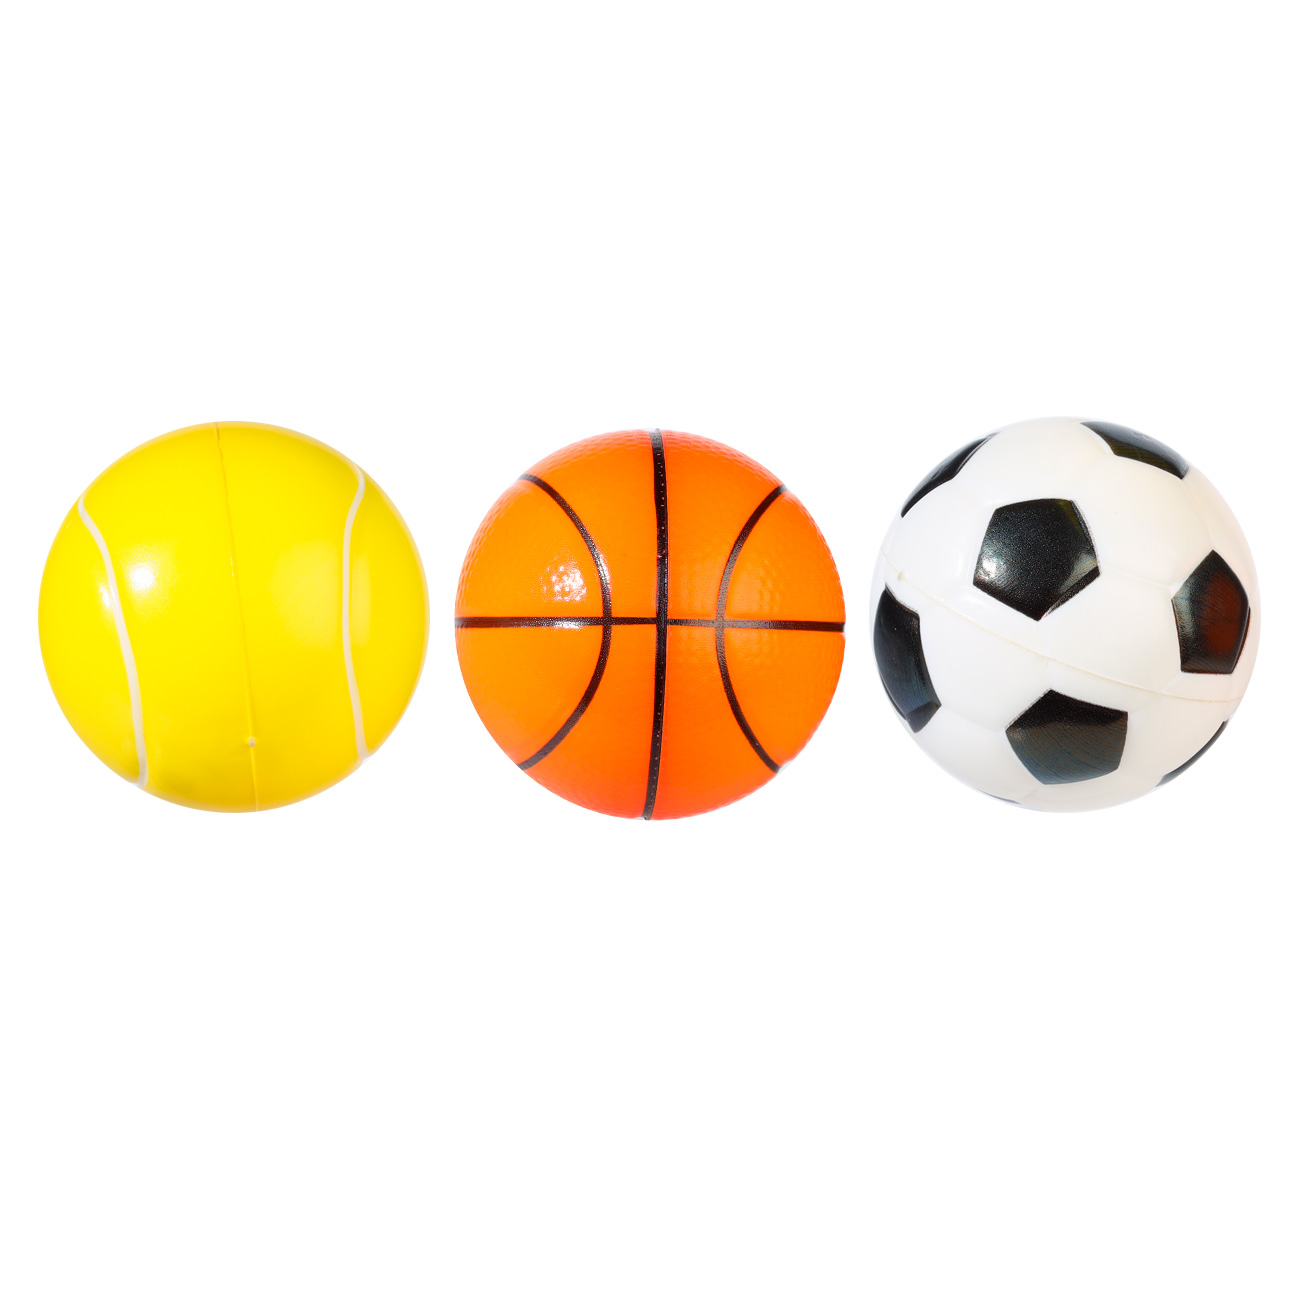 Мяч, 6 см, 3 шт, в сетке, полиуретан, цветной, Футбол/Баскетбол/Теннис, Game